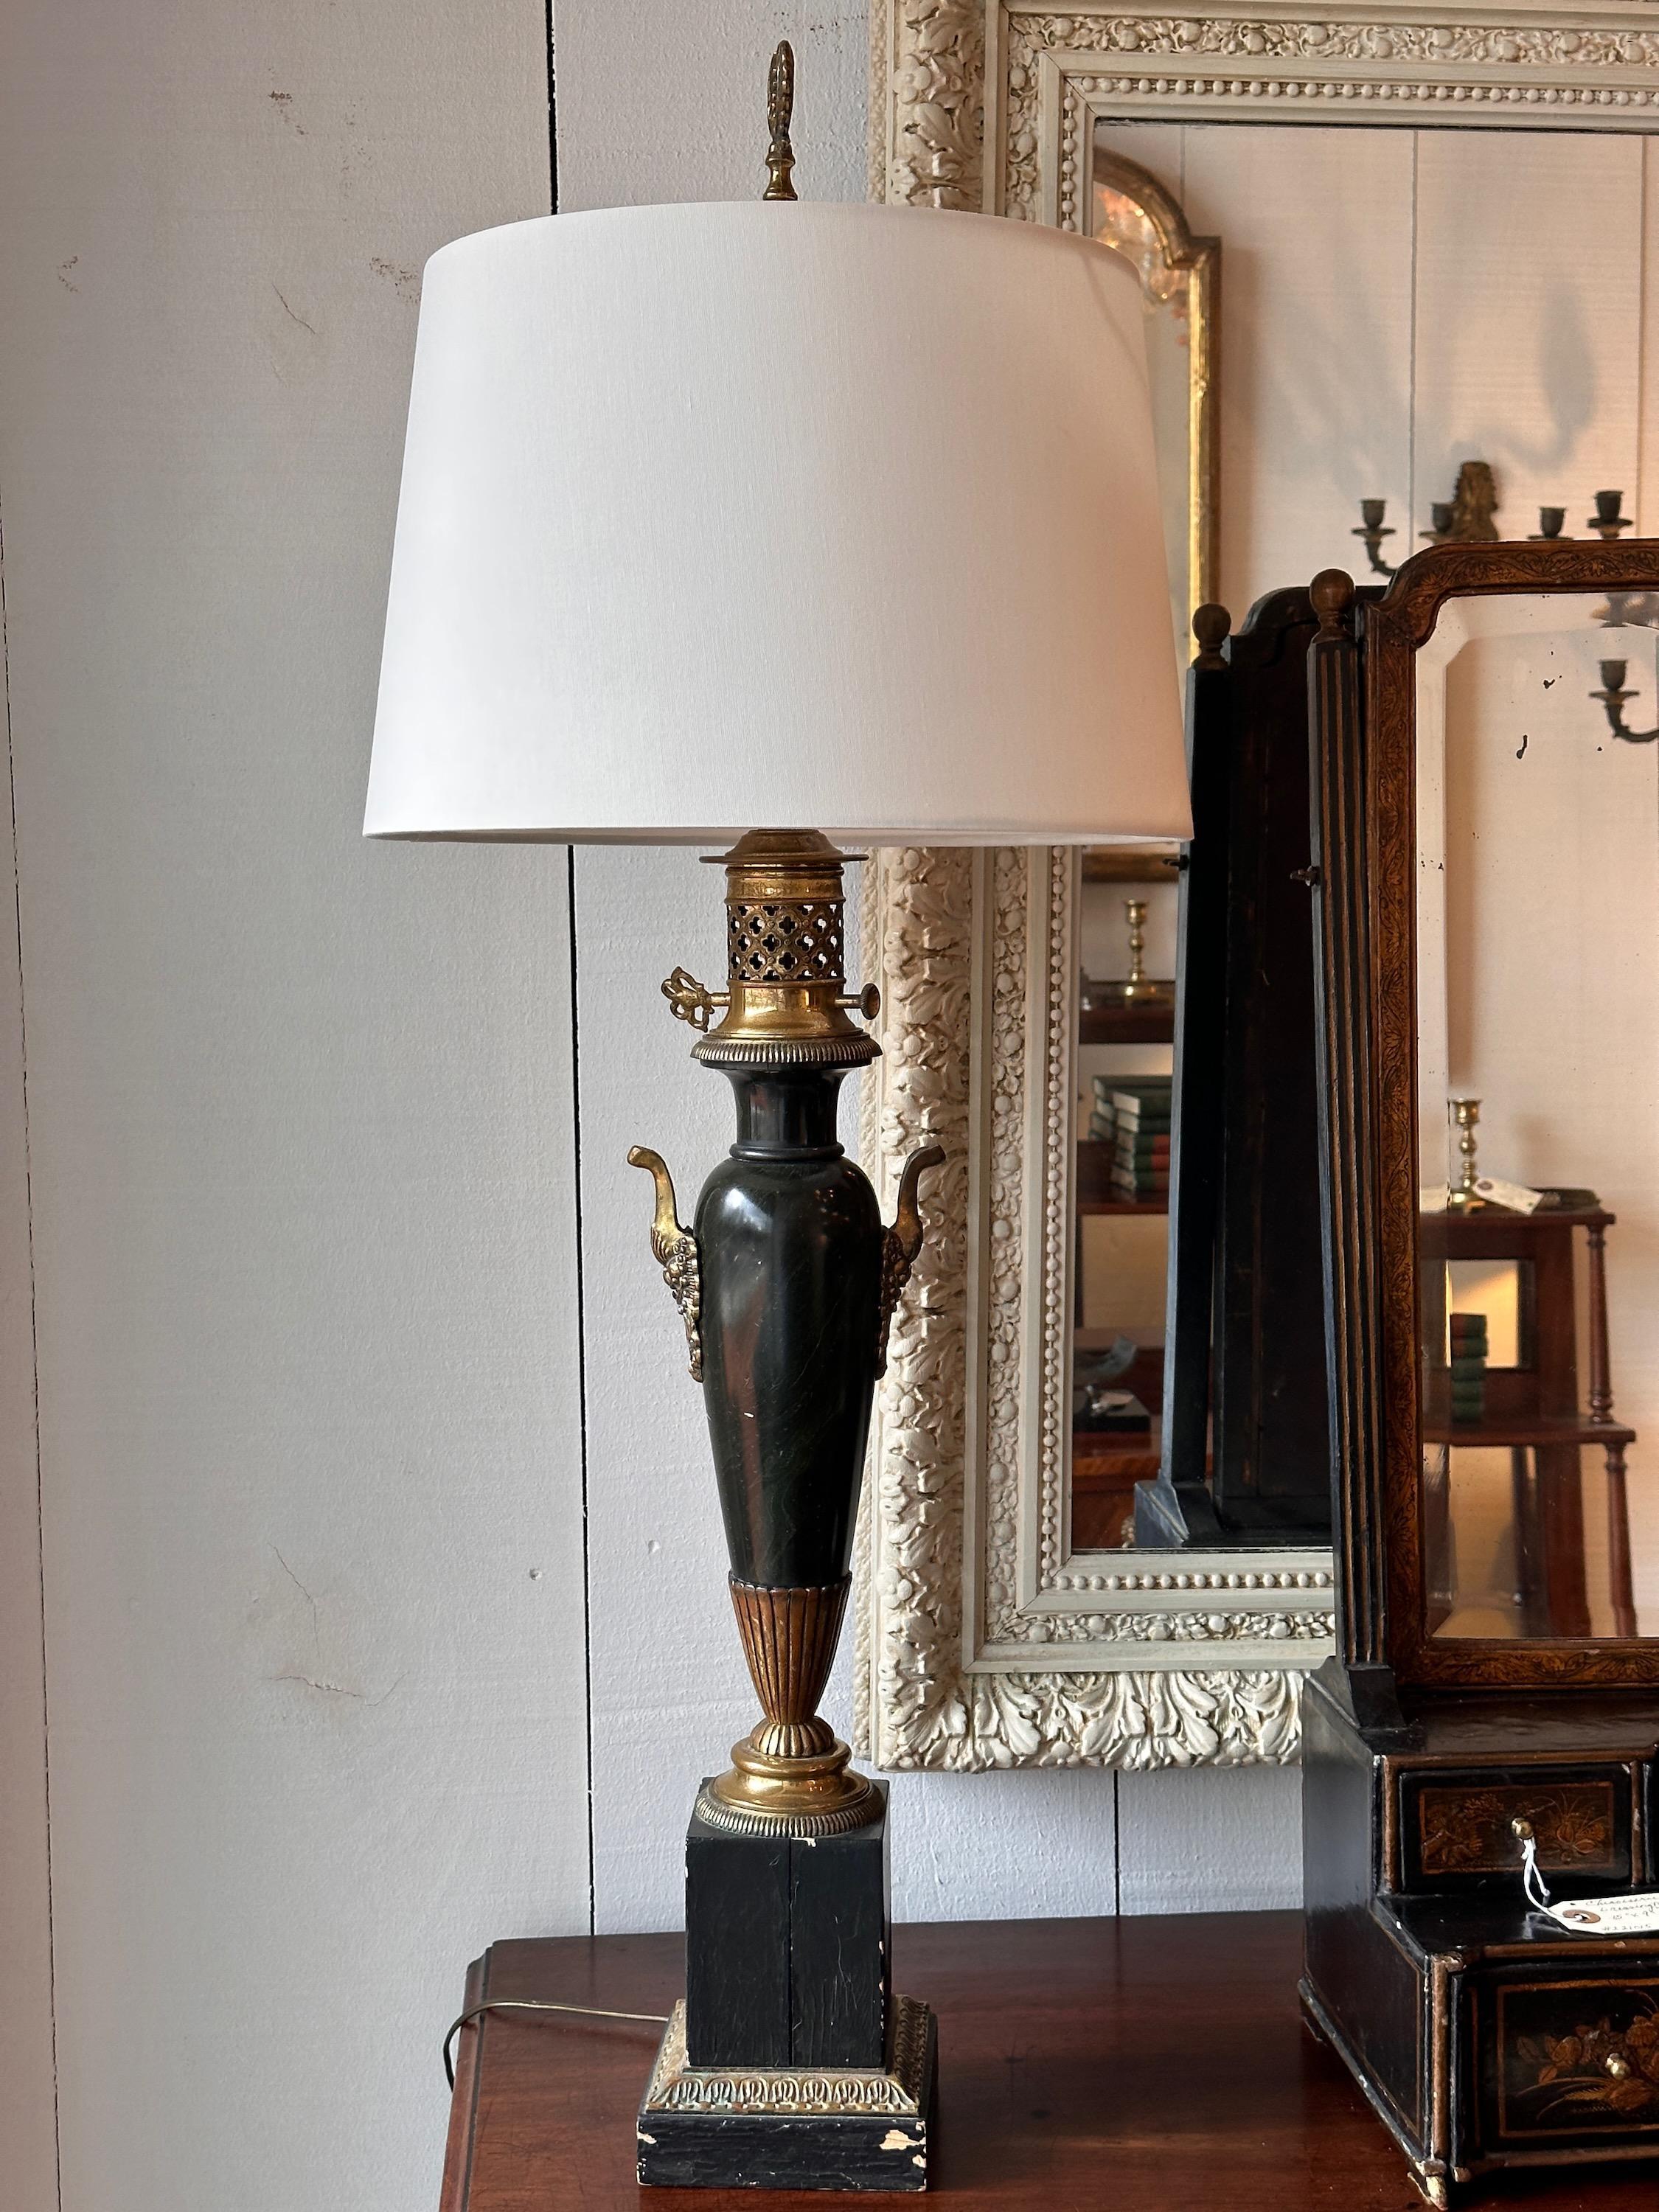 Lampe simple, belles lignes élégantes. Fabriqué au 19e siècle.